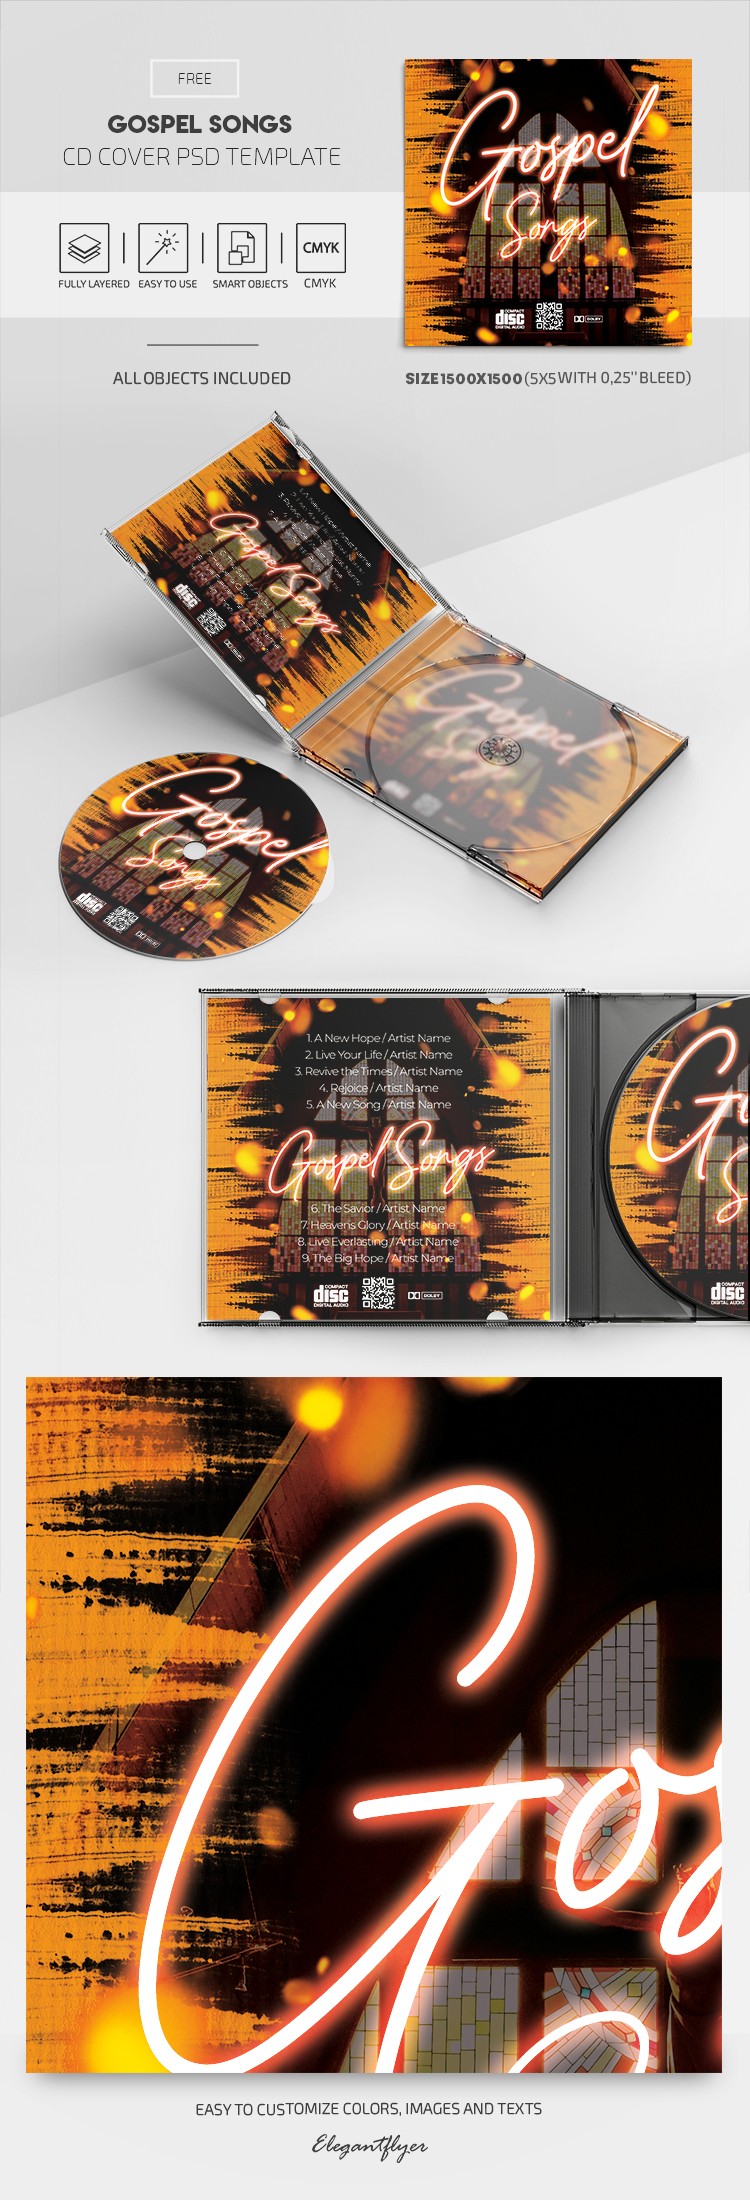 Gospellieder CD Cover by ElegantFlyer